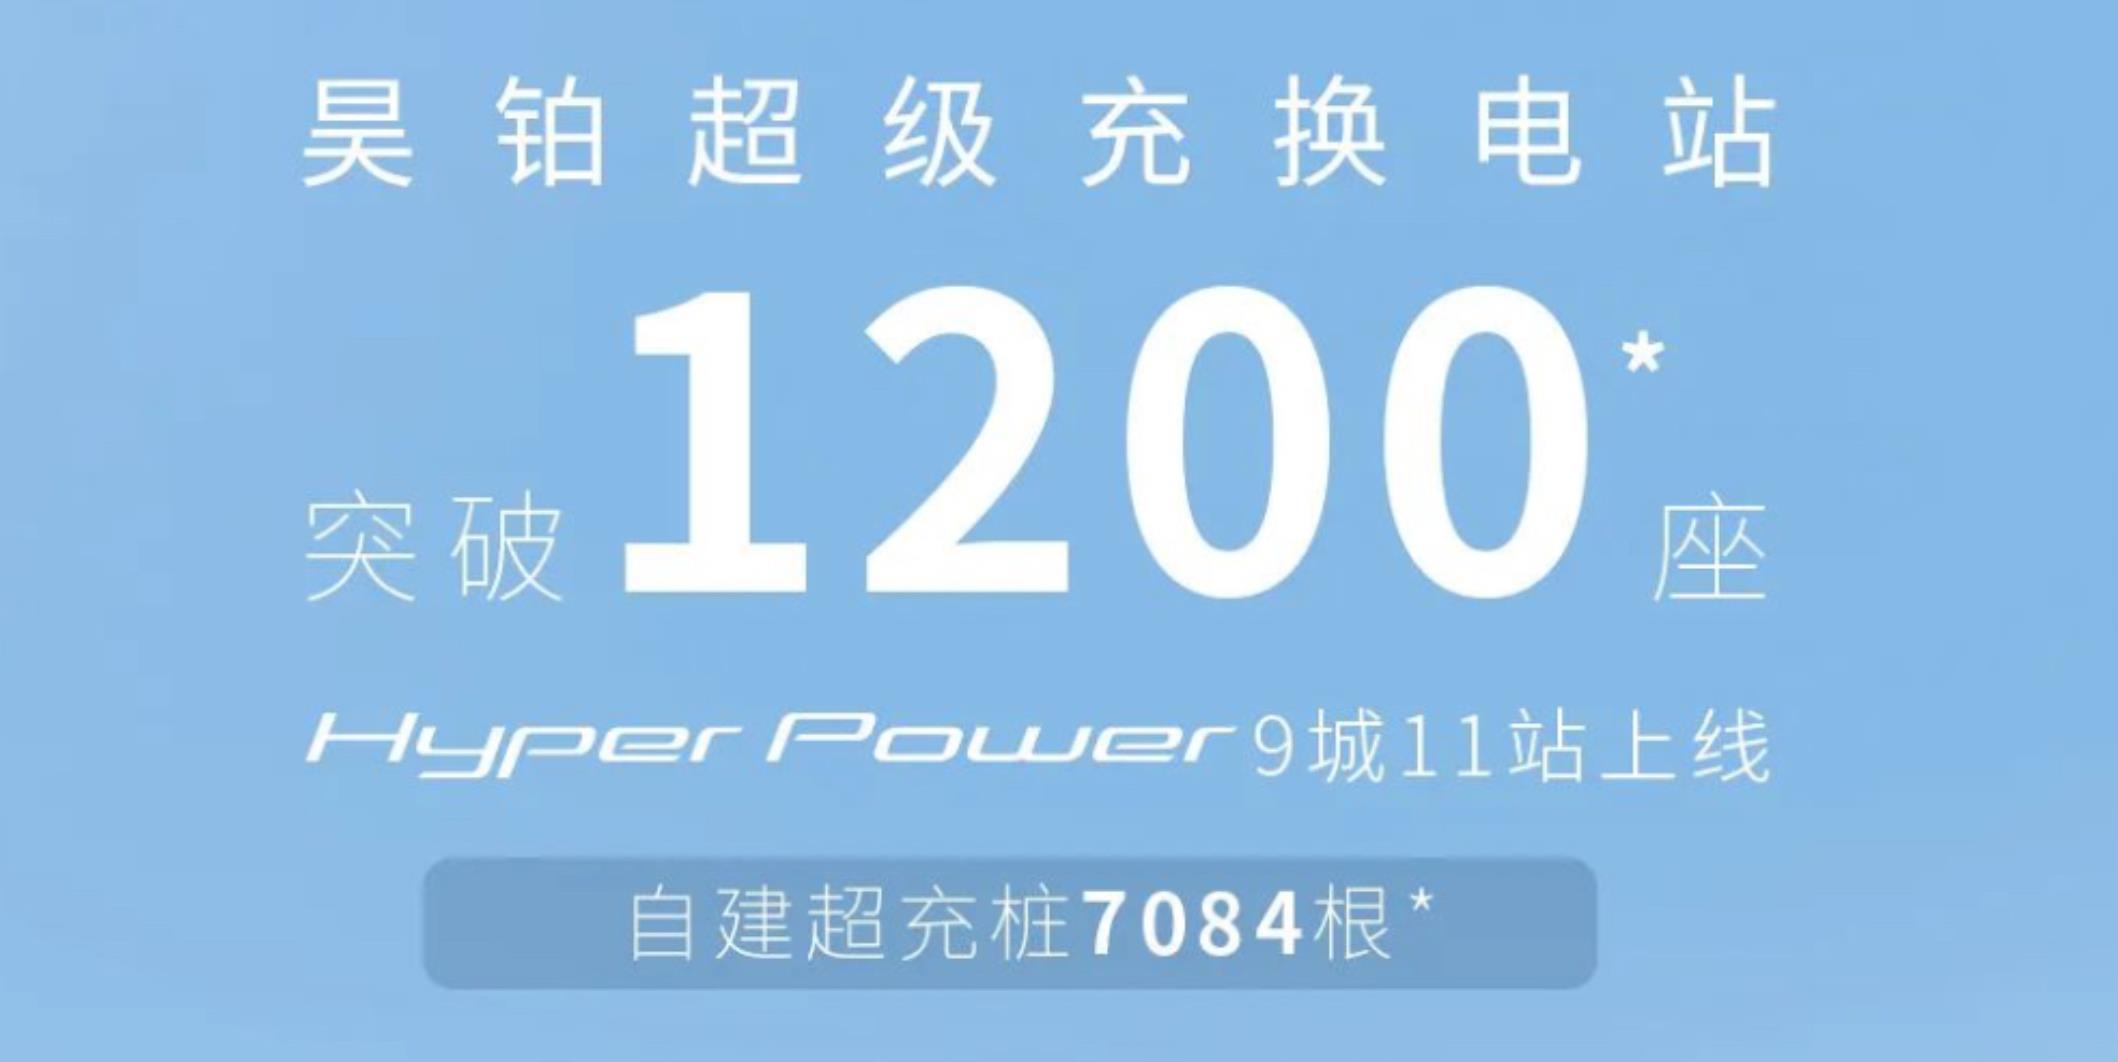 广汽埃安旗下昊铂超级充换电站突破1200座